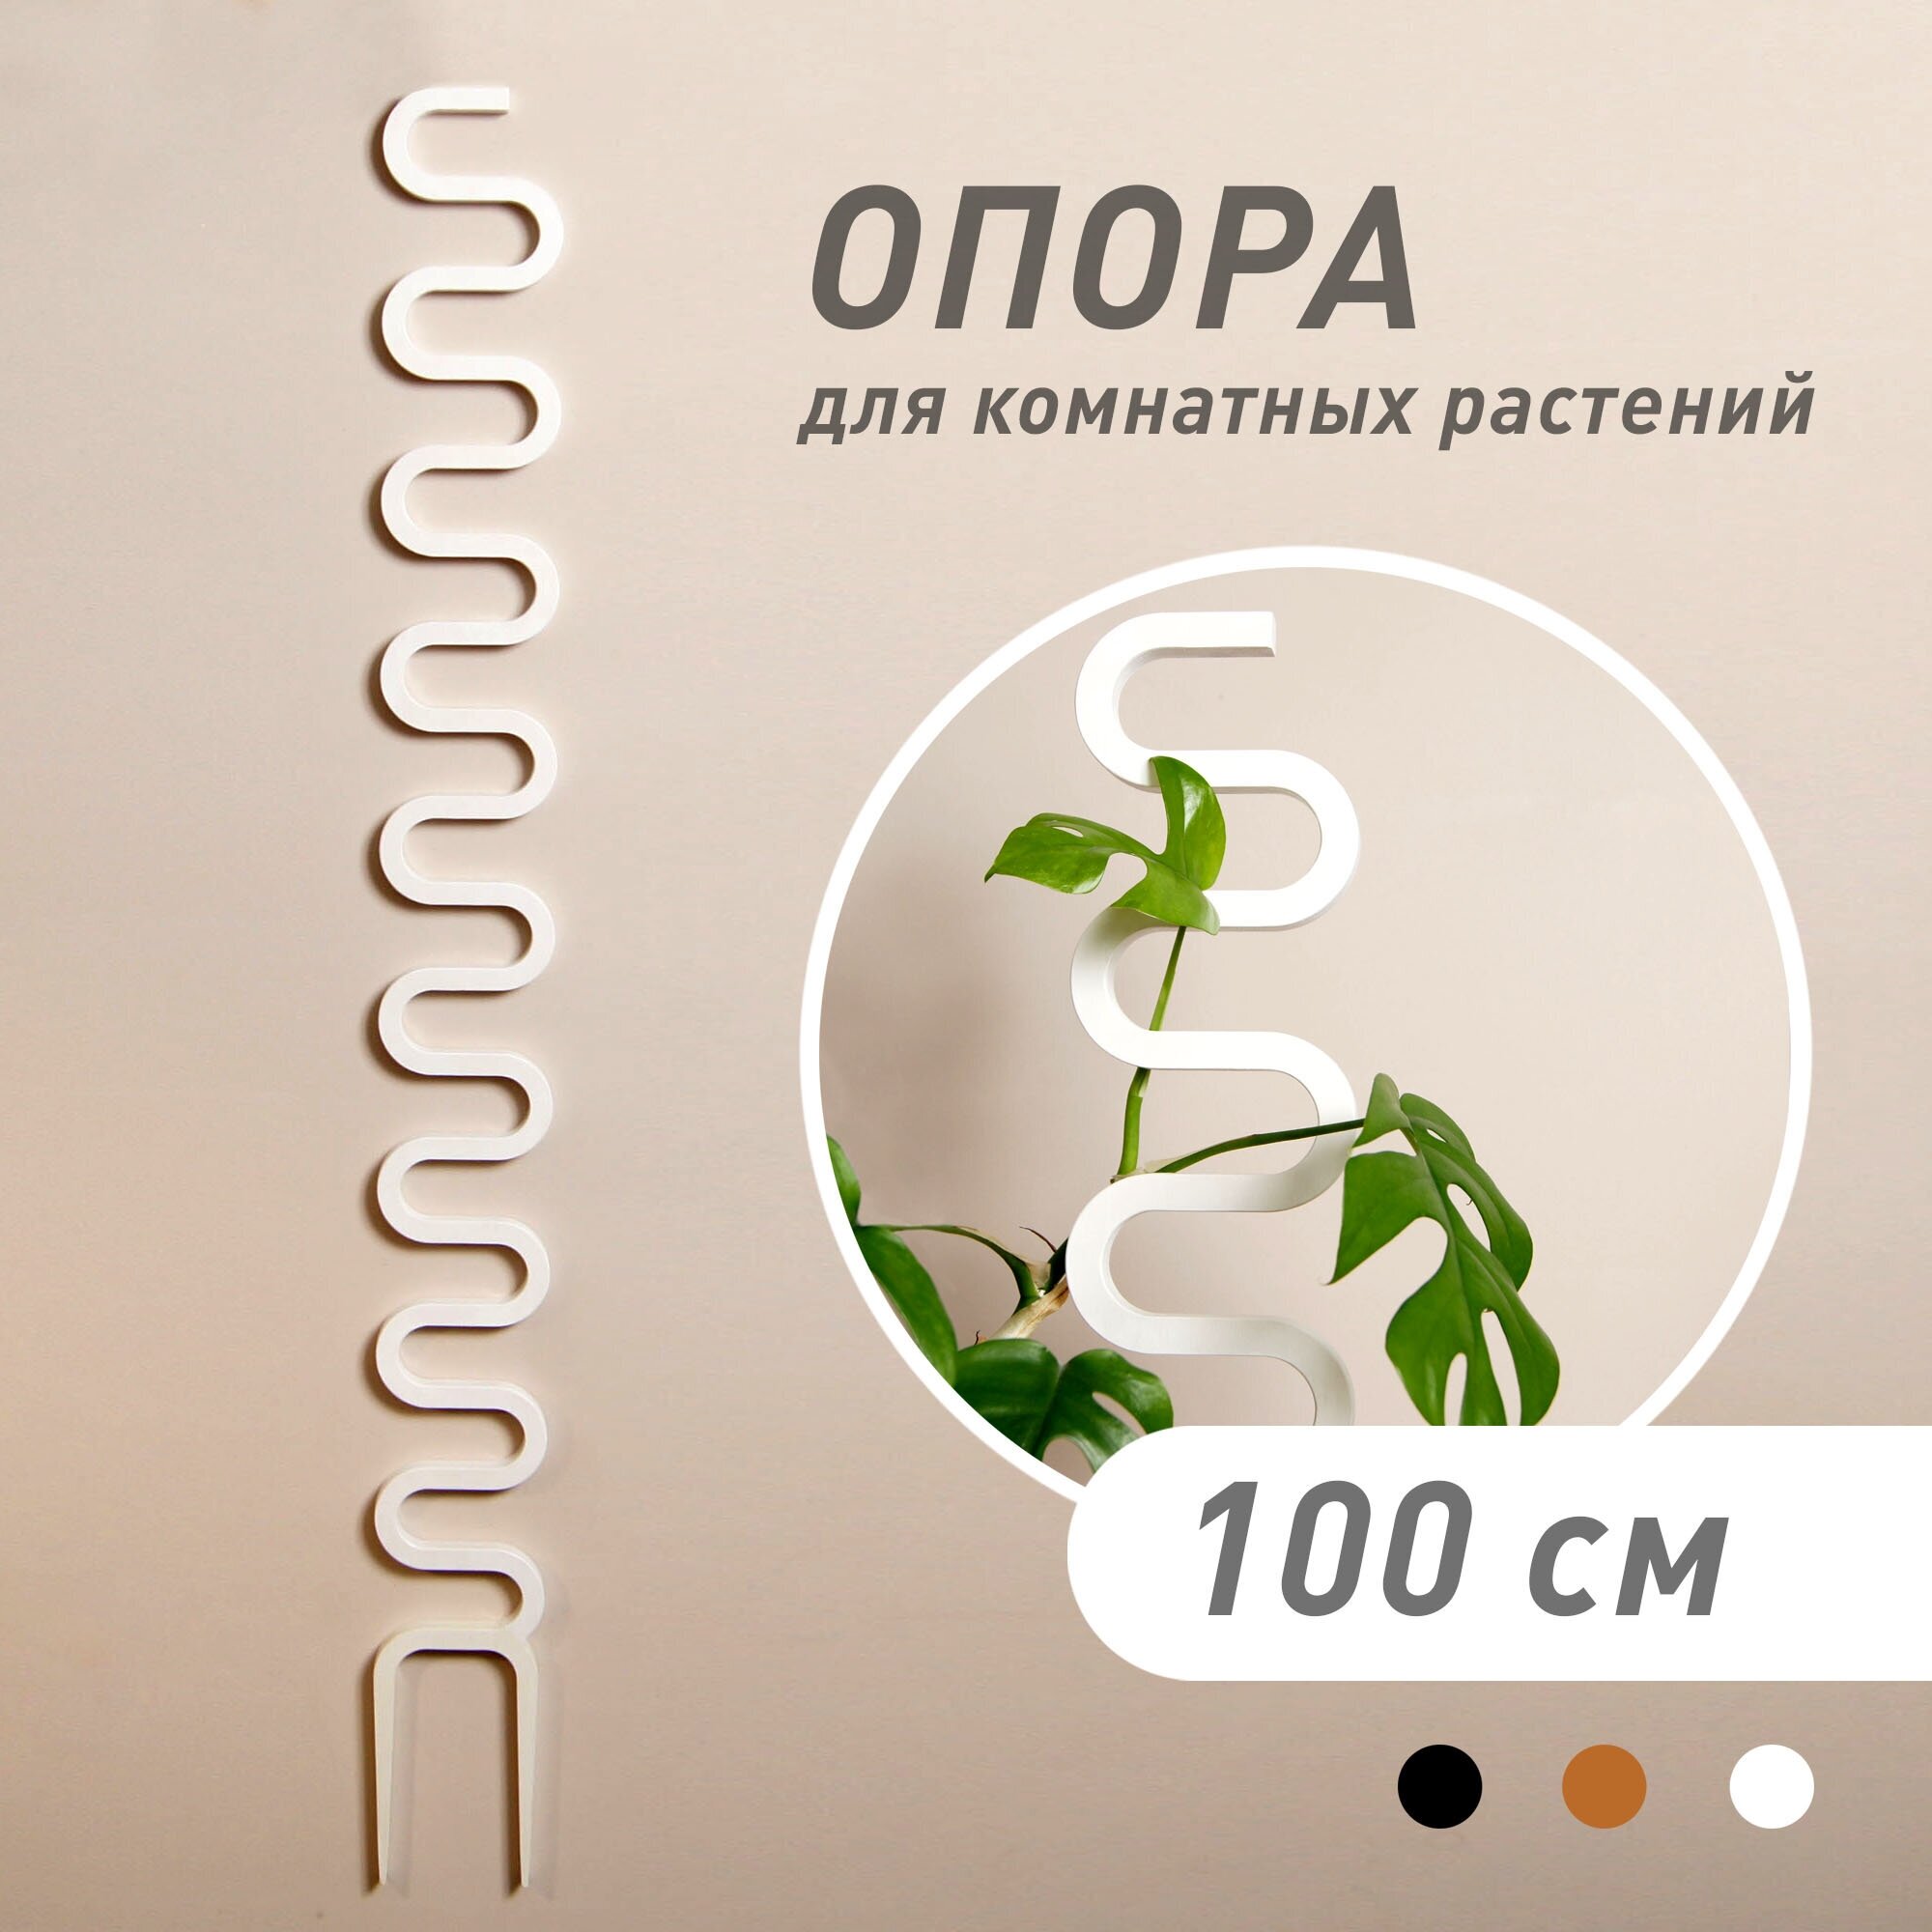 Опора для домашних растений "COBRA", чёрная, высота 100 см - фотография № 1